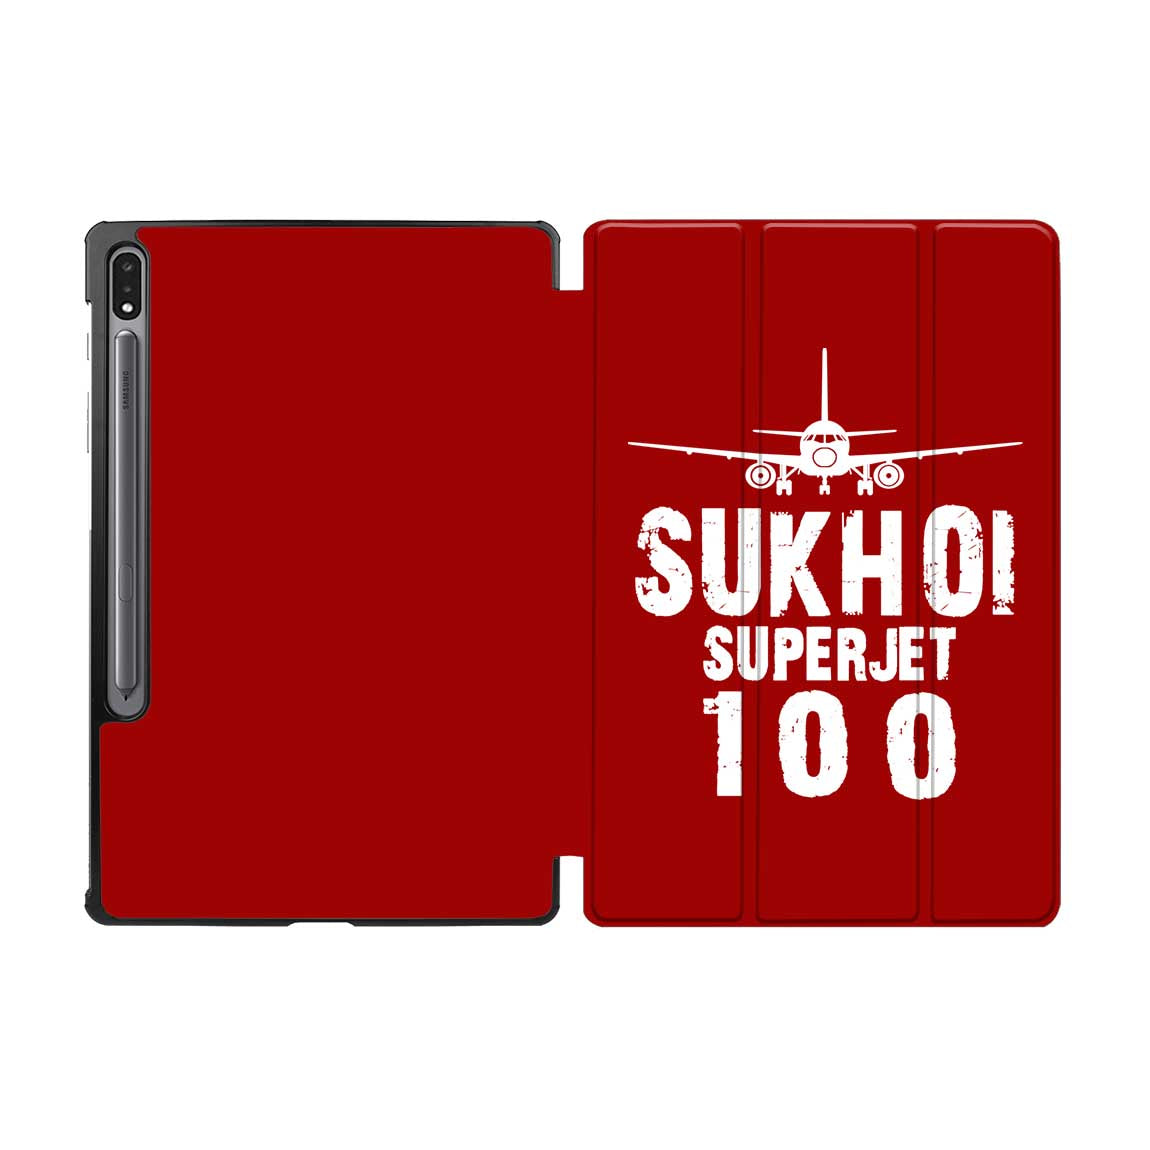 Sukhoi Superjet 100 & Plane Designed Samsung Tablet Cases